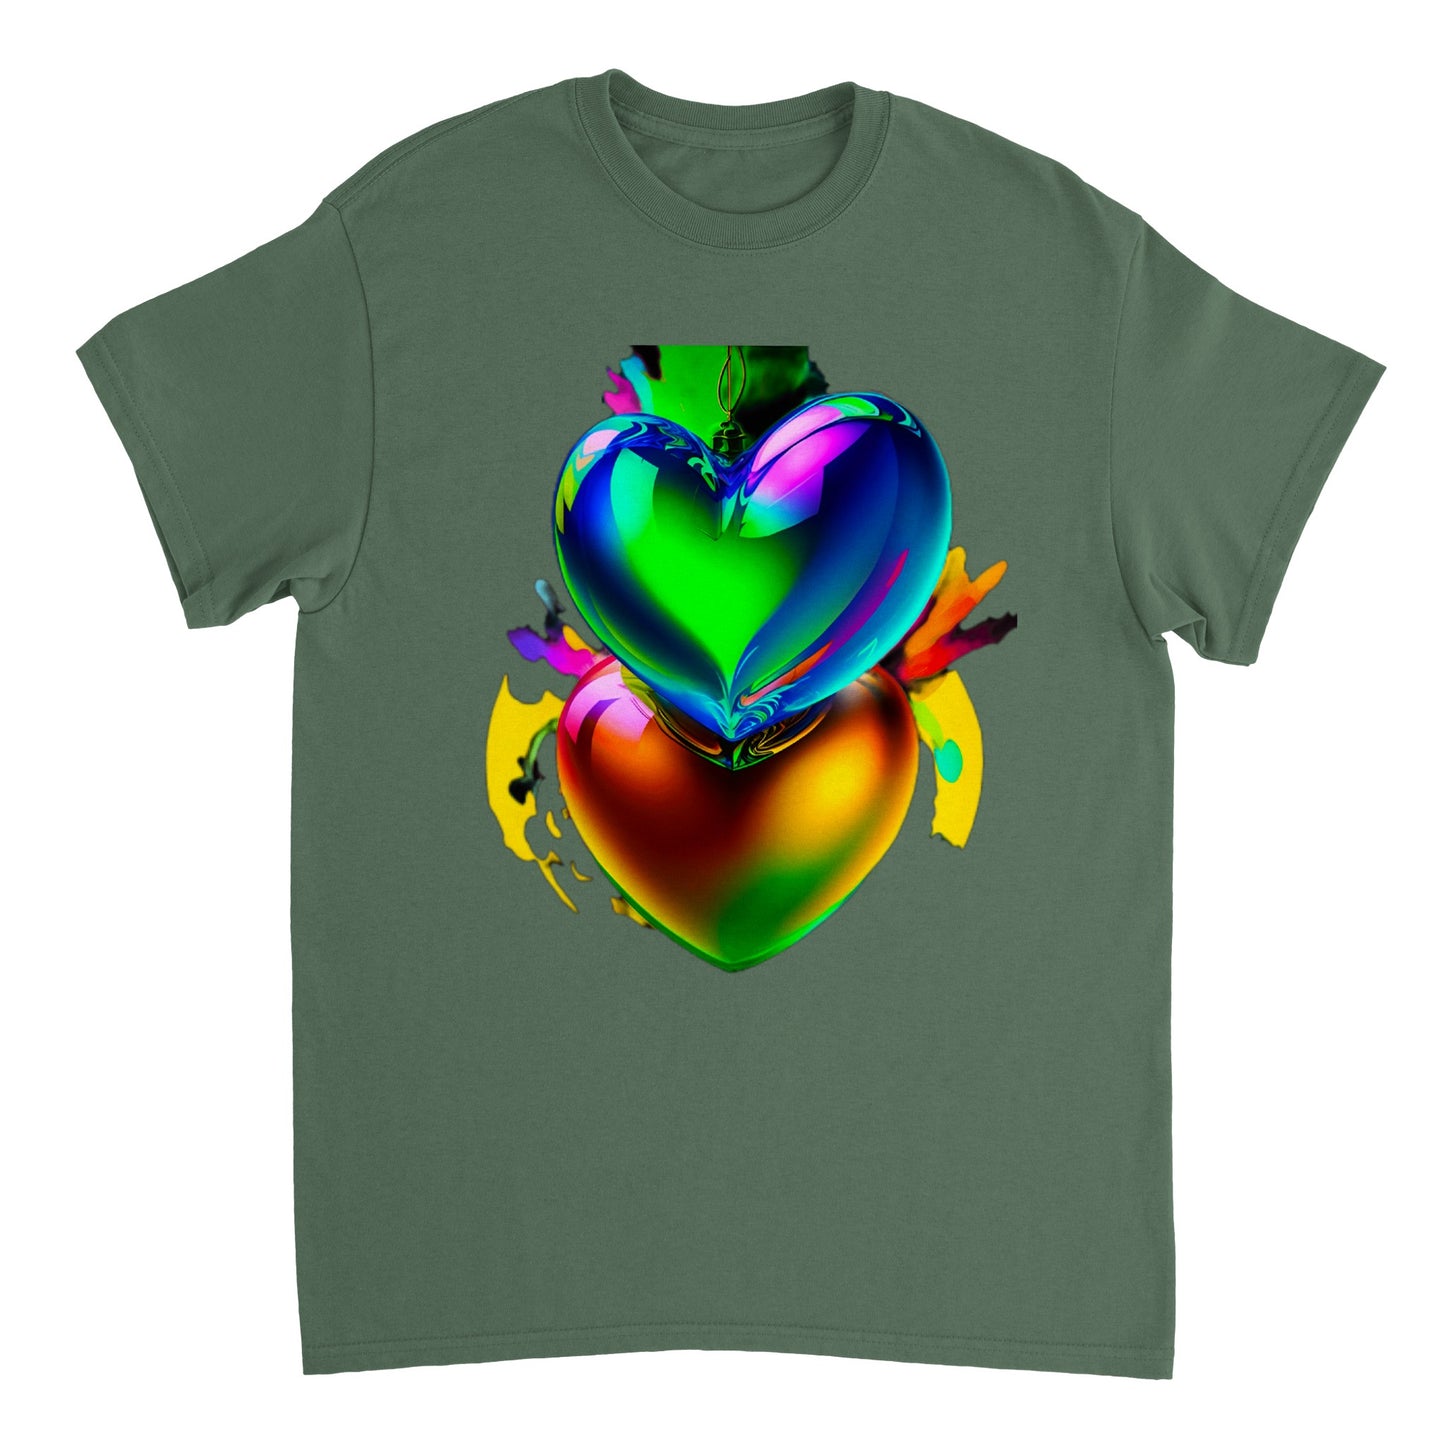 Love Heart - Heavyweight Unisex Crewneck T-shirt 58